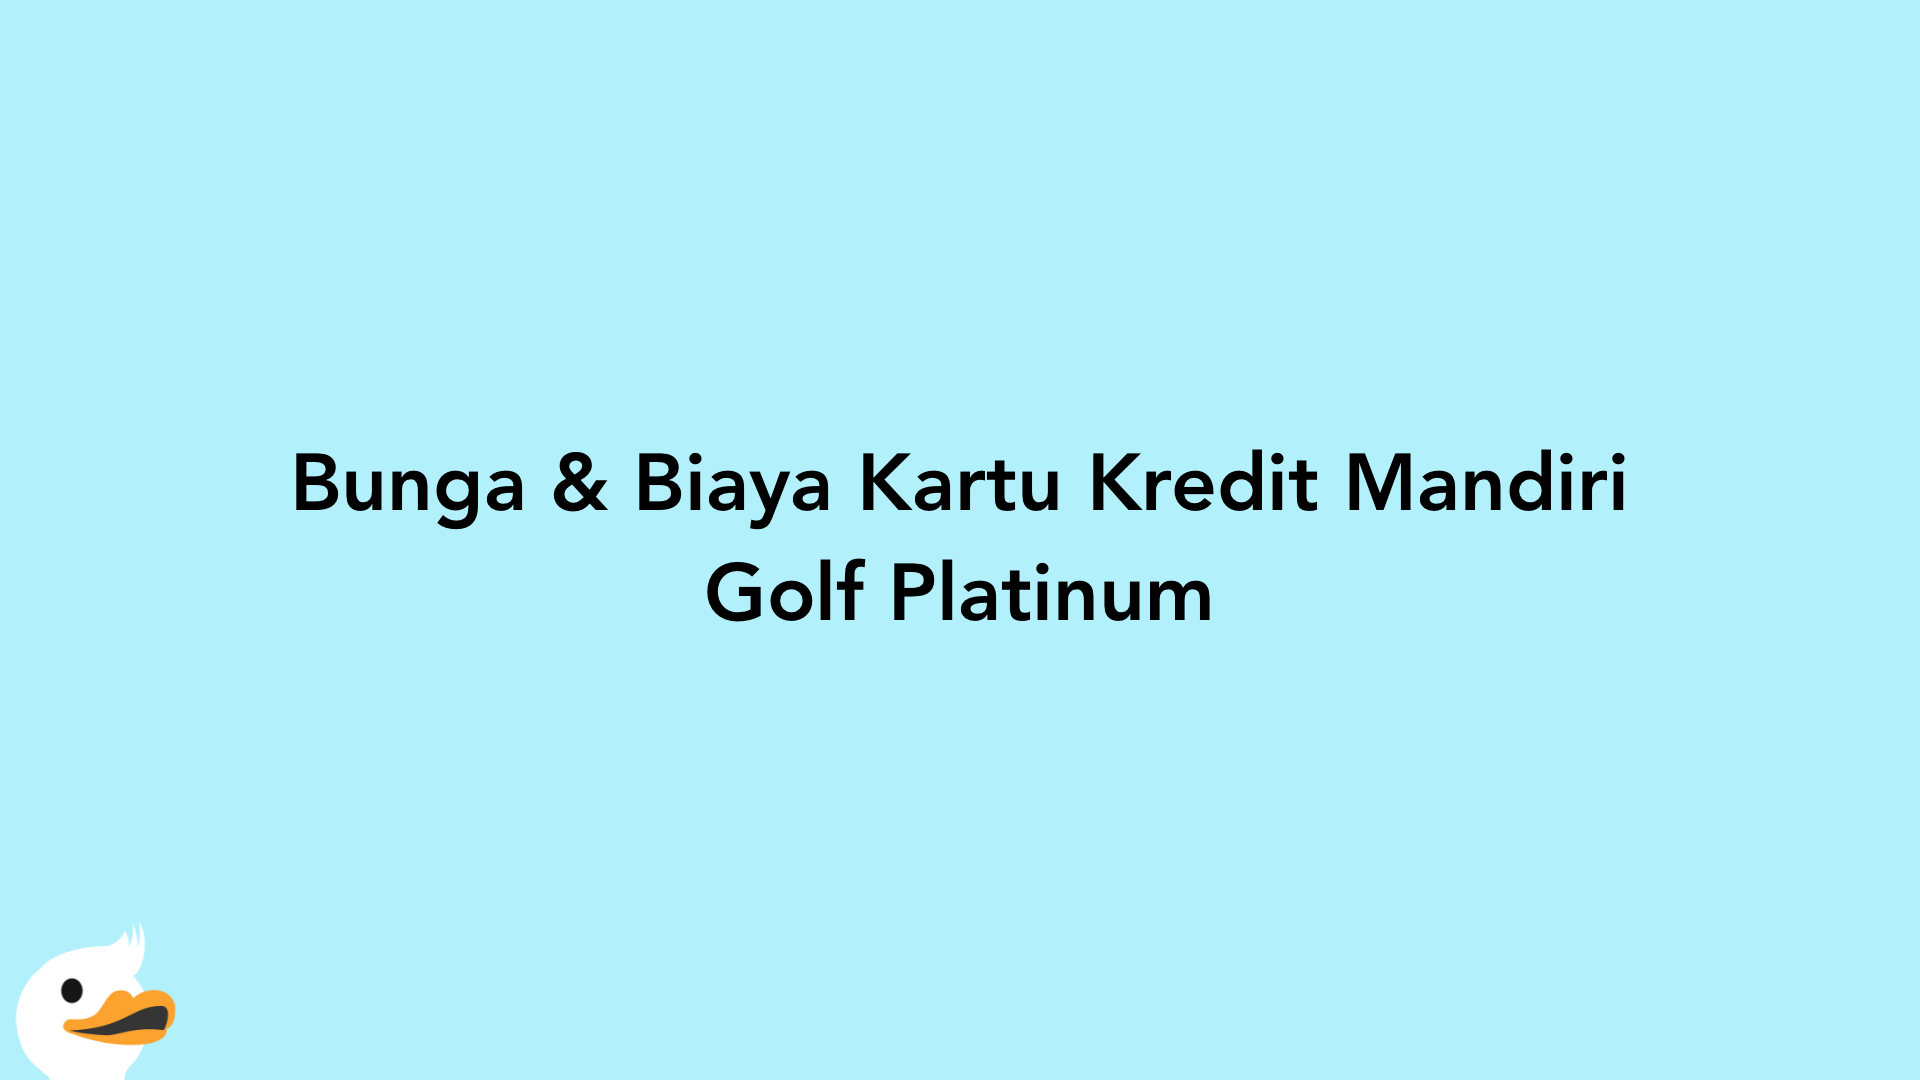 Bunga & Biaya Kartu Kredit Mandiri Golf Platinum